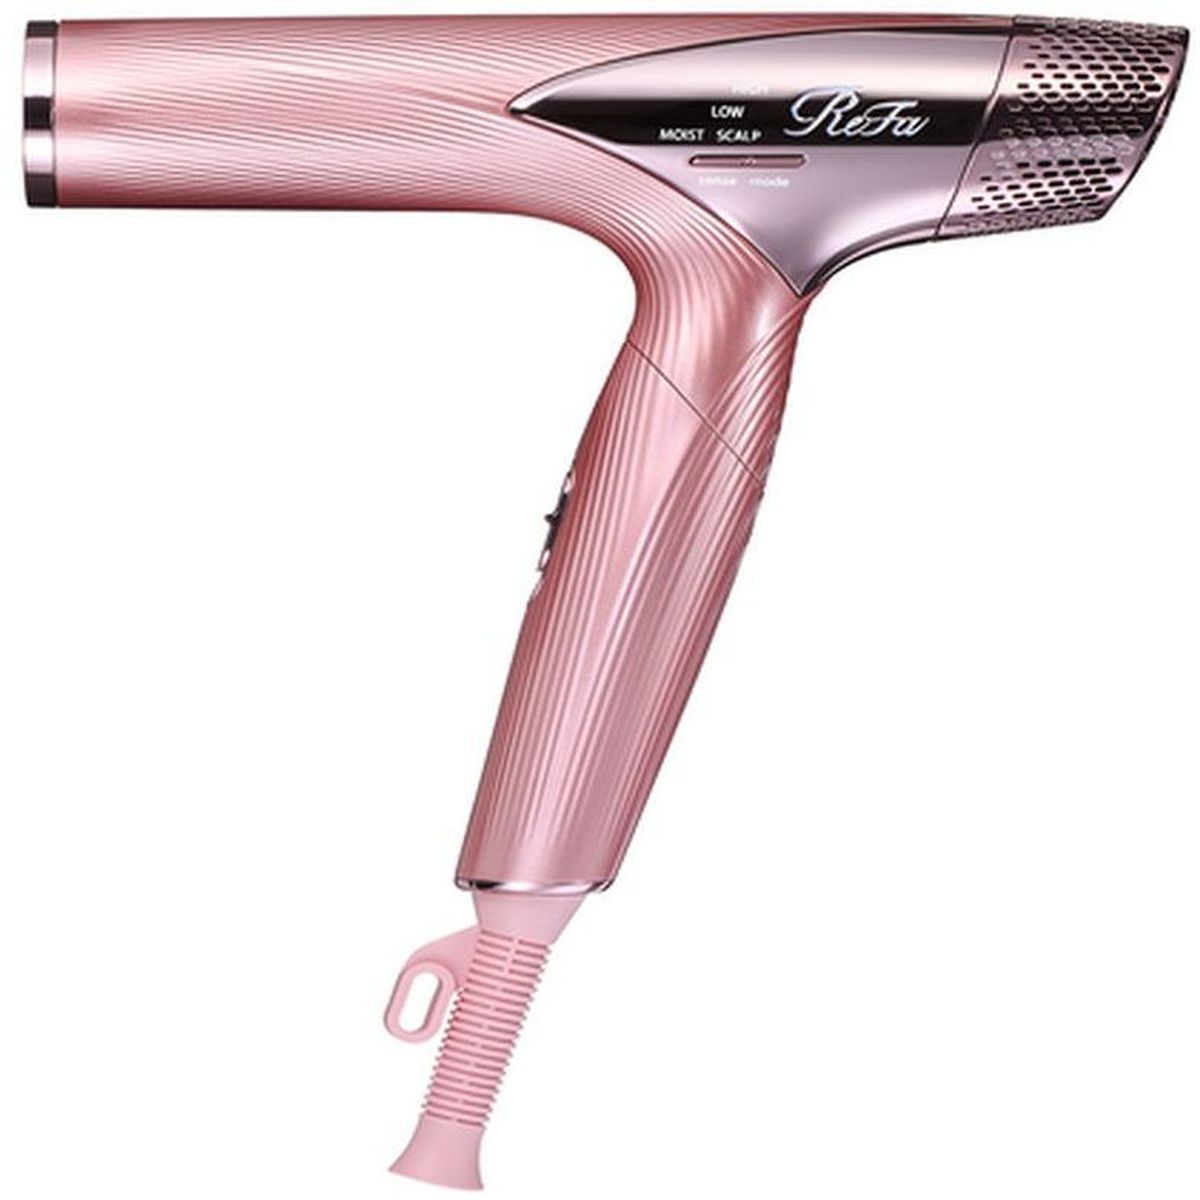 【即納】【最新モデル 海外対応】ReFa DRYER SMART ピンク コンパクト 軽量 髪 温度調整 速乾 折りたたみ ヘアドライヤー